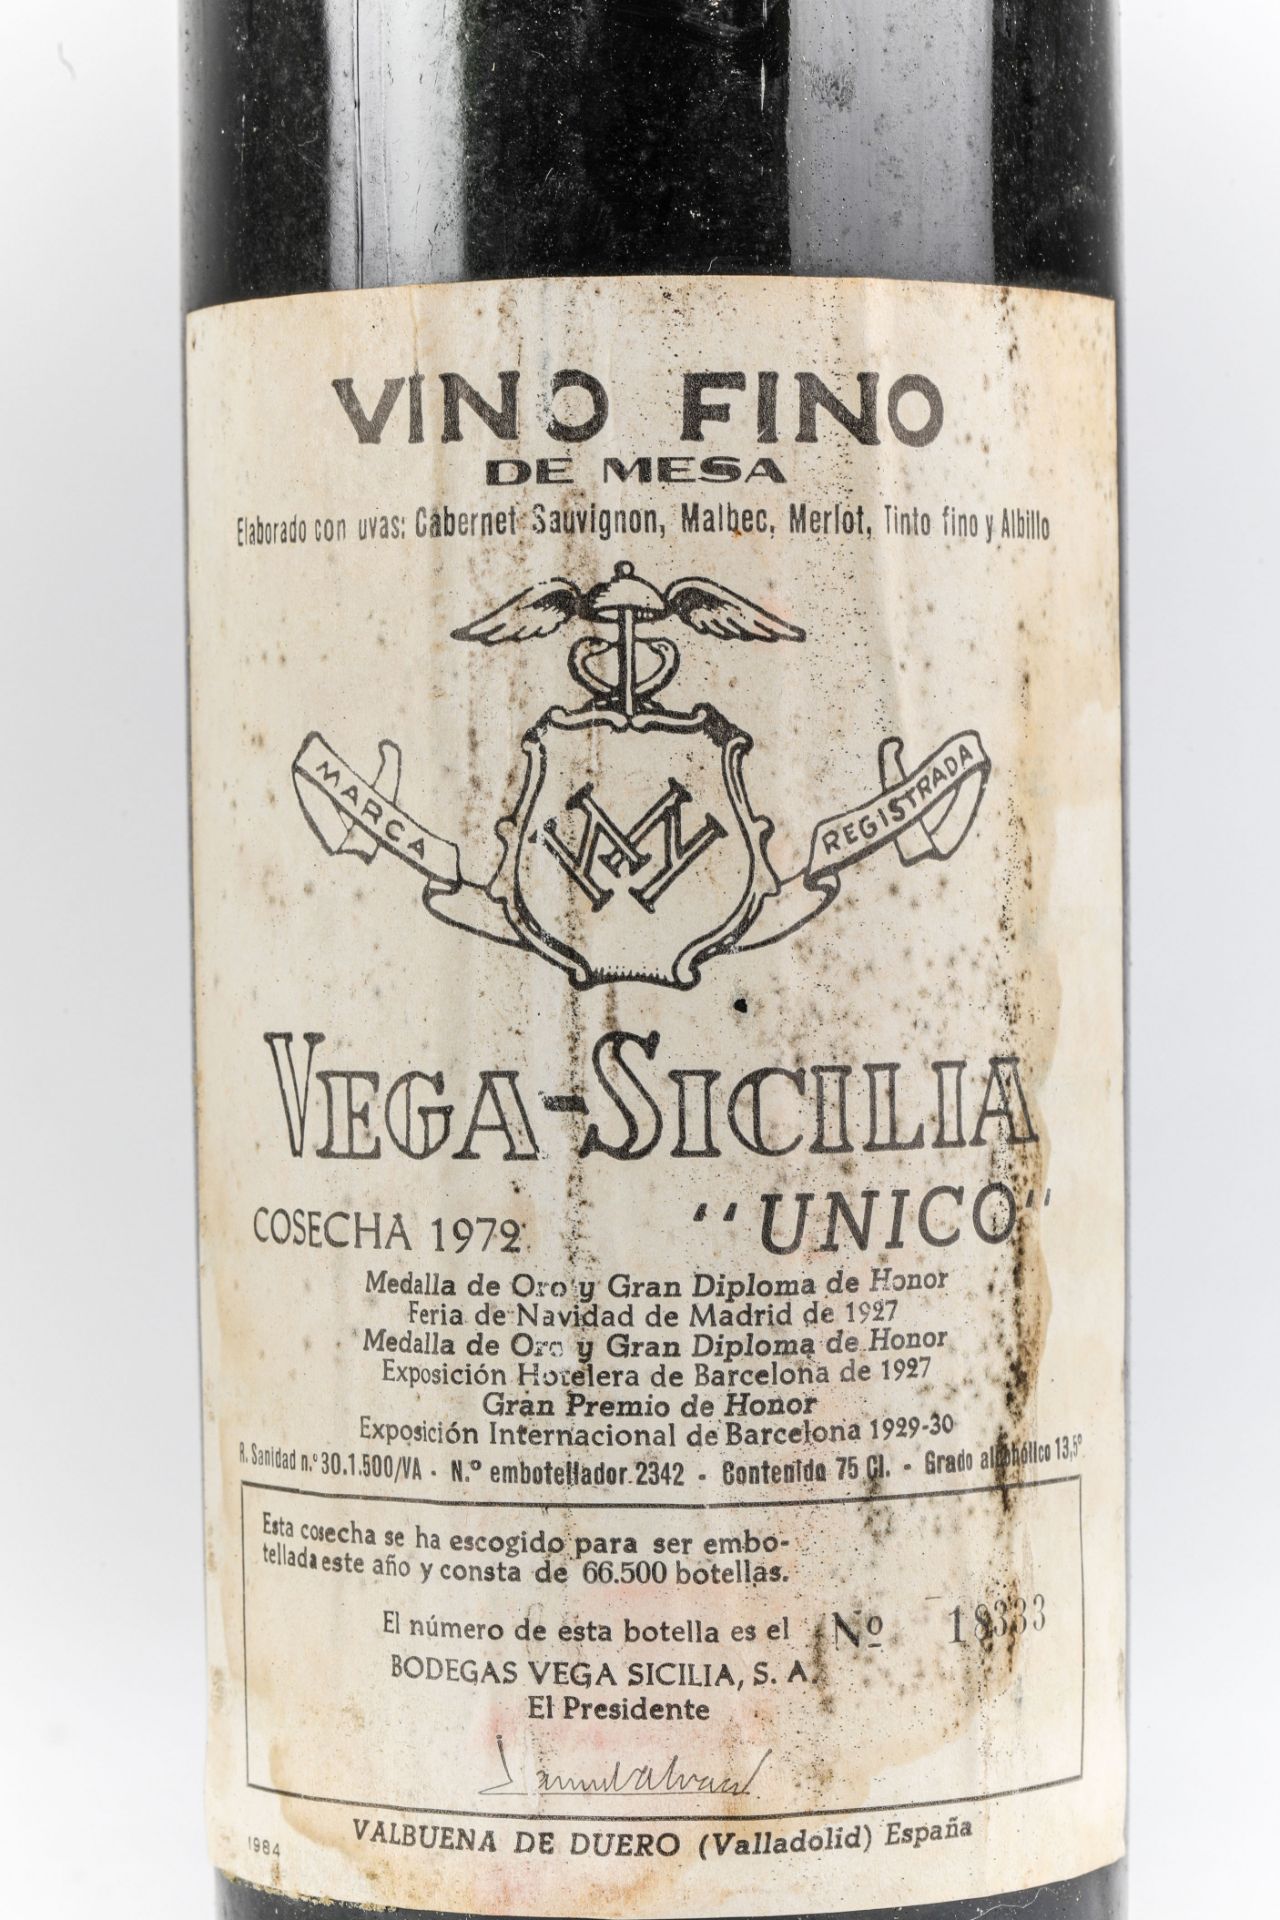 VEGA SICILIA UNICO. 1972. Ribera del Duero. Bouteille N°18333 sur production 66 500 bouteilles. - Image 2 of 4